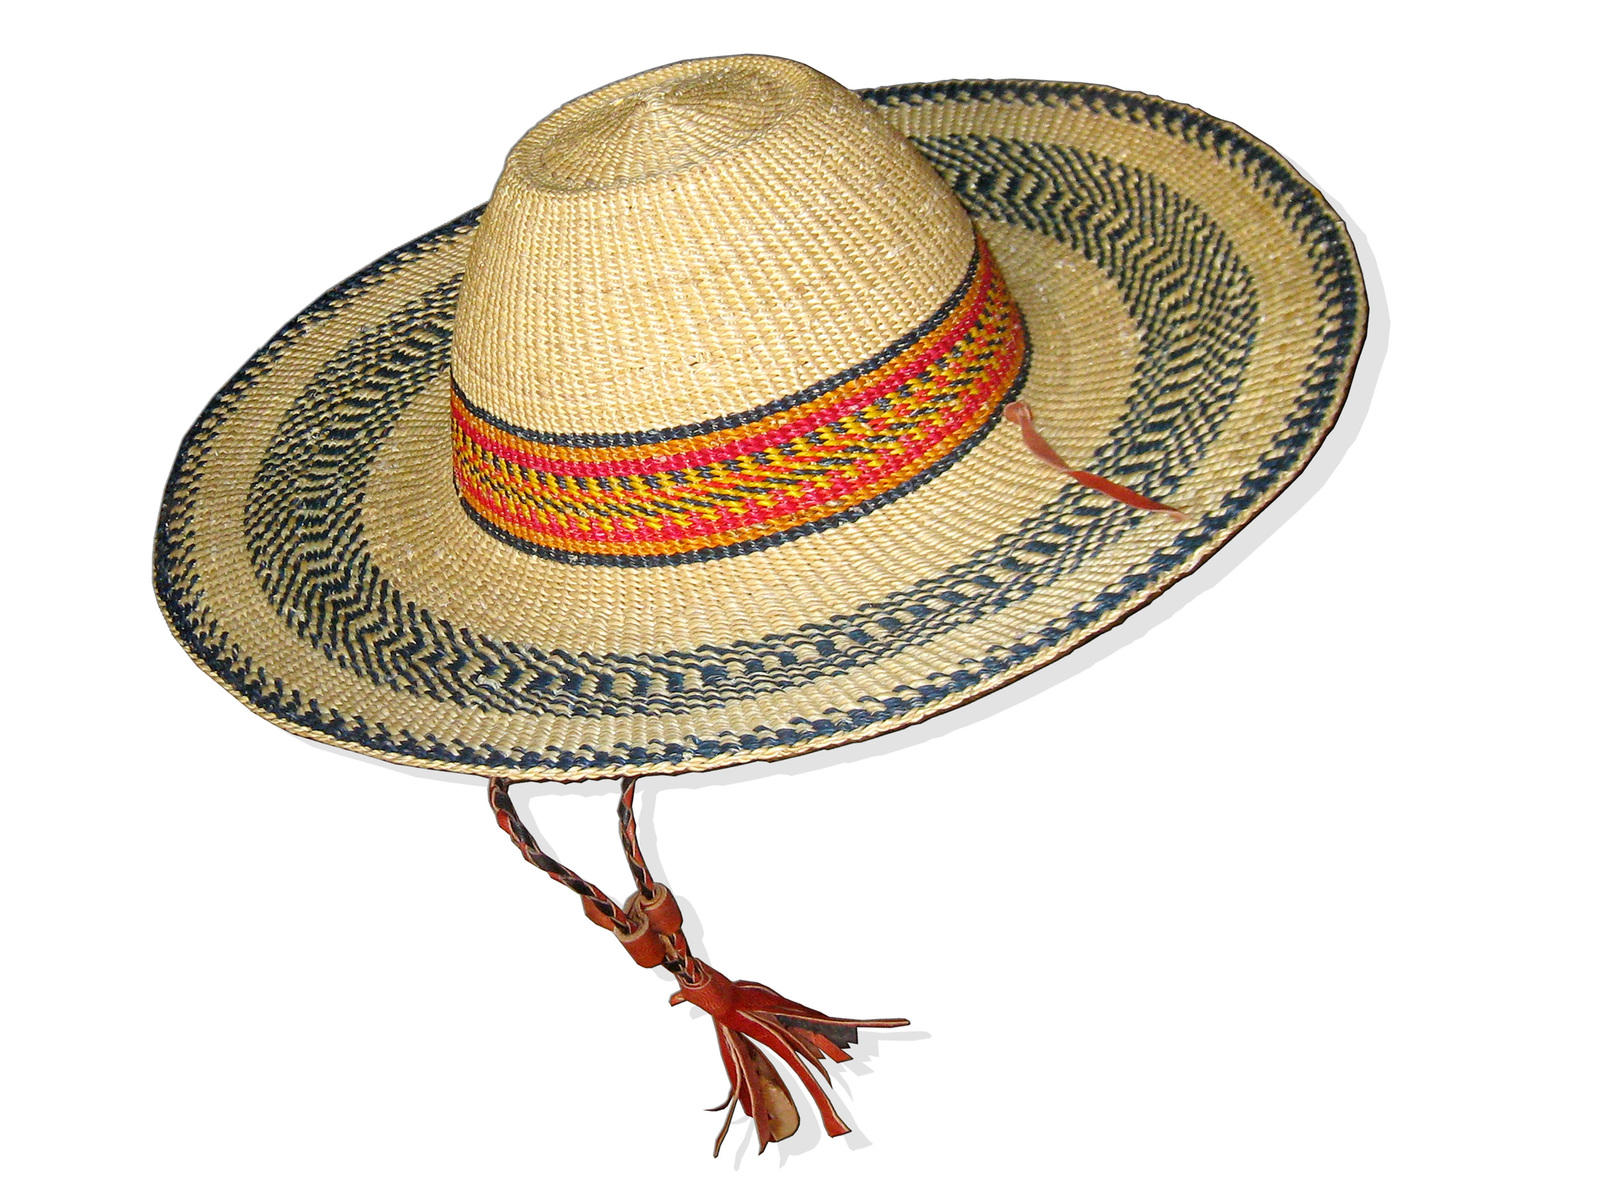 Vintage Straw Hat Sun Straw Hat Vacation Hat Beach Hat Medium Hat Straw hat